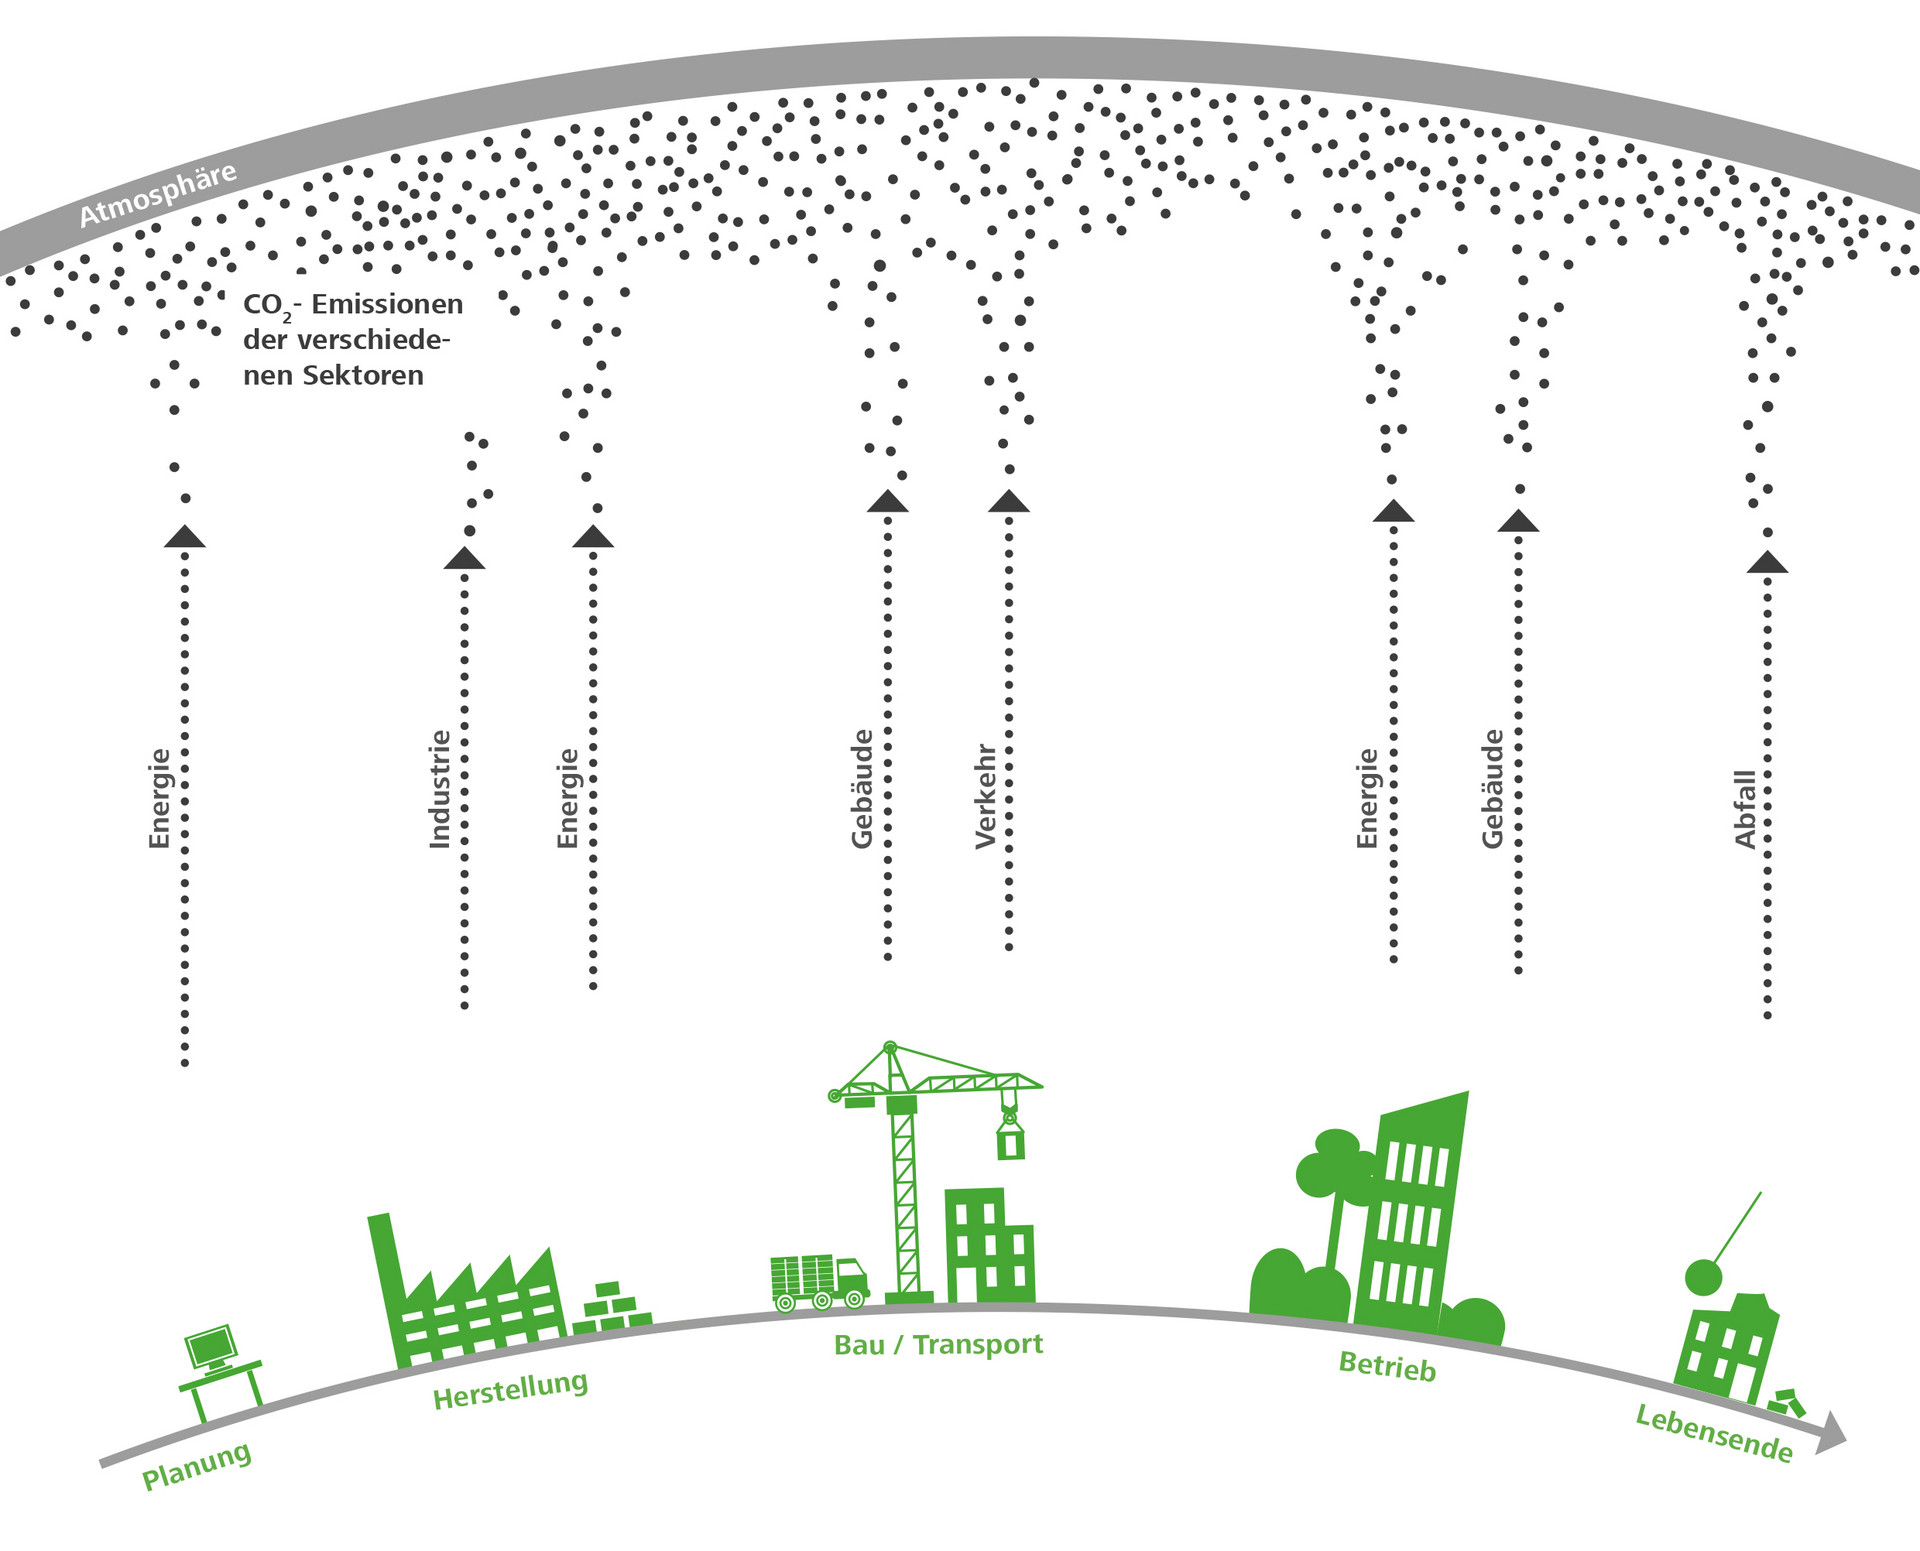 Die Grafik visualisiert die CO2-Emissionen im Lebenszyklus eines Gebäudes nach Sektoren